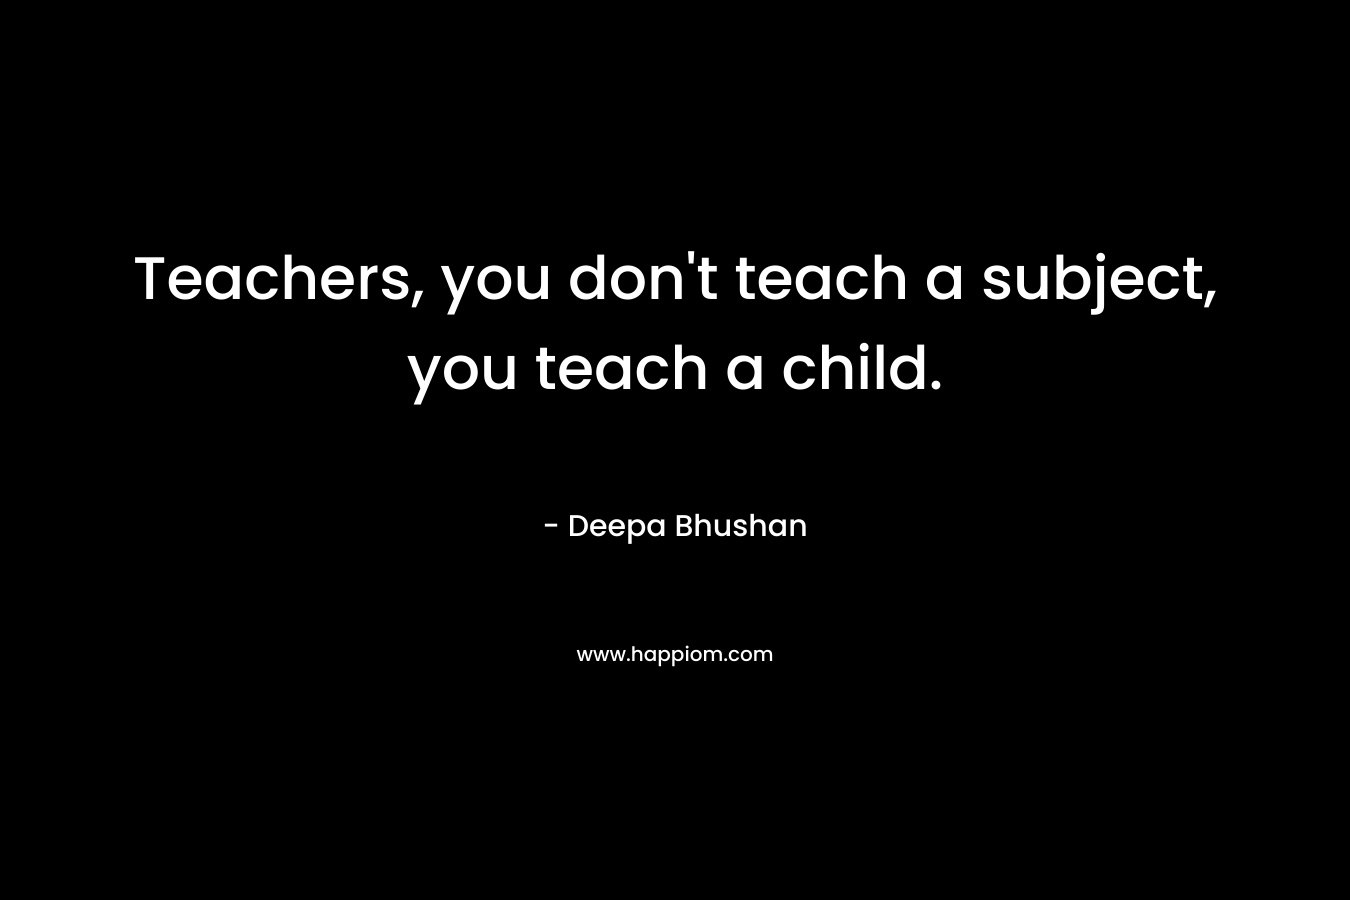 Teachers, you don't teach a subject, you teach a child.